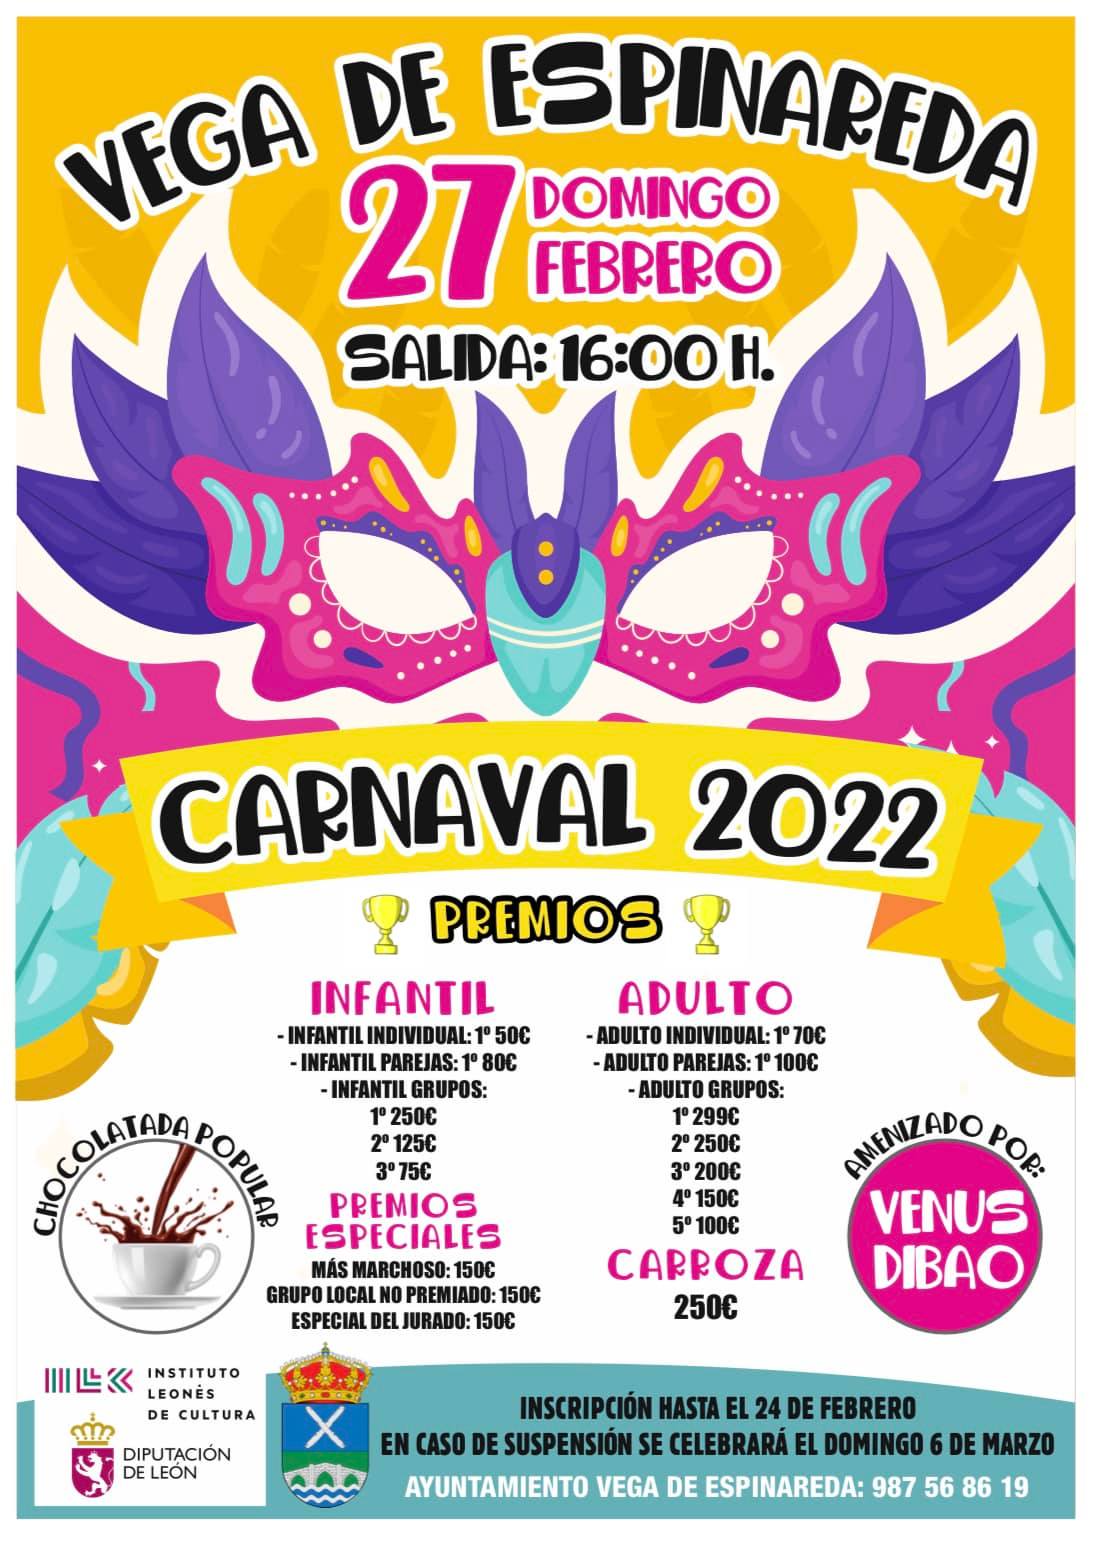 Carnaval 2022 en Vega de Espinareda, información, horarios y premios del desfile 2